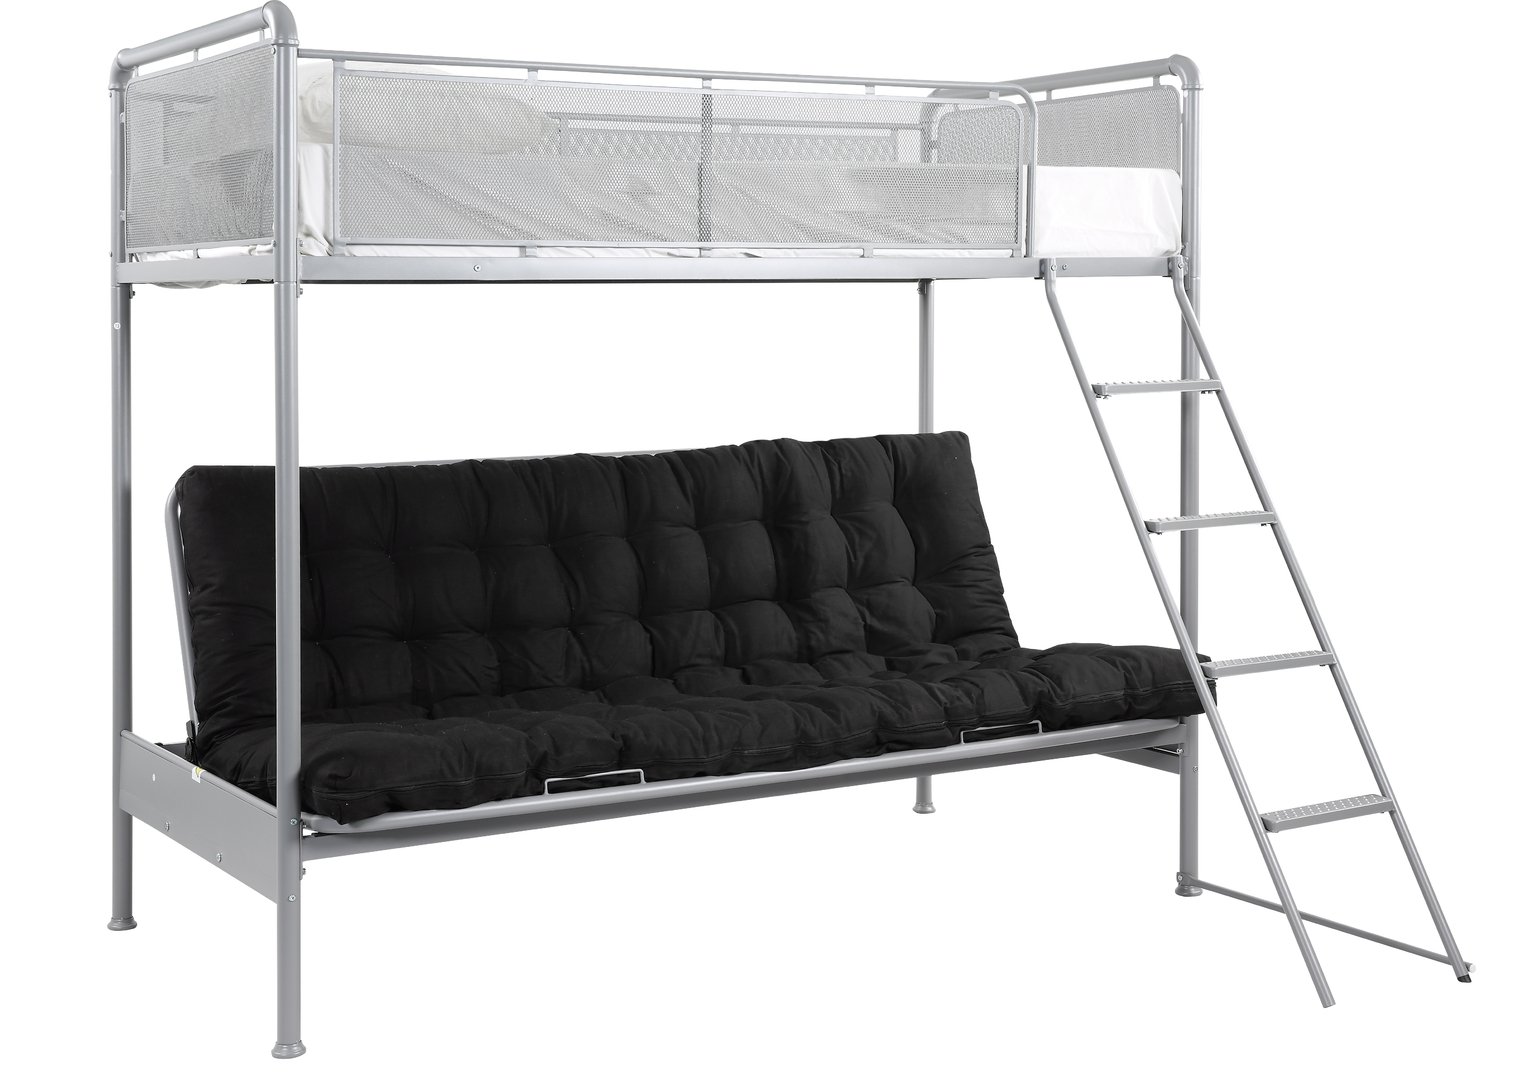 black metal futon bunk bed